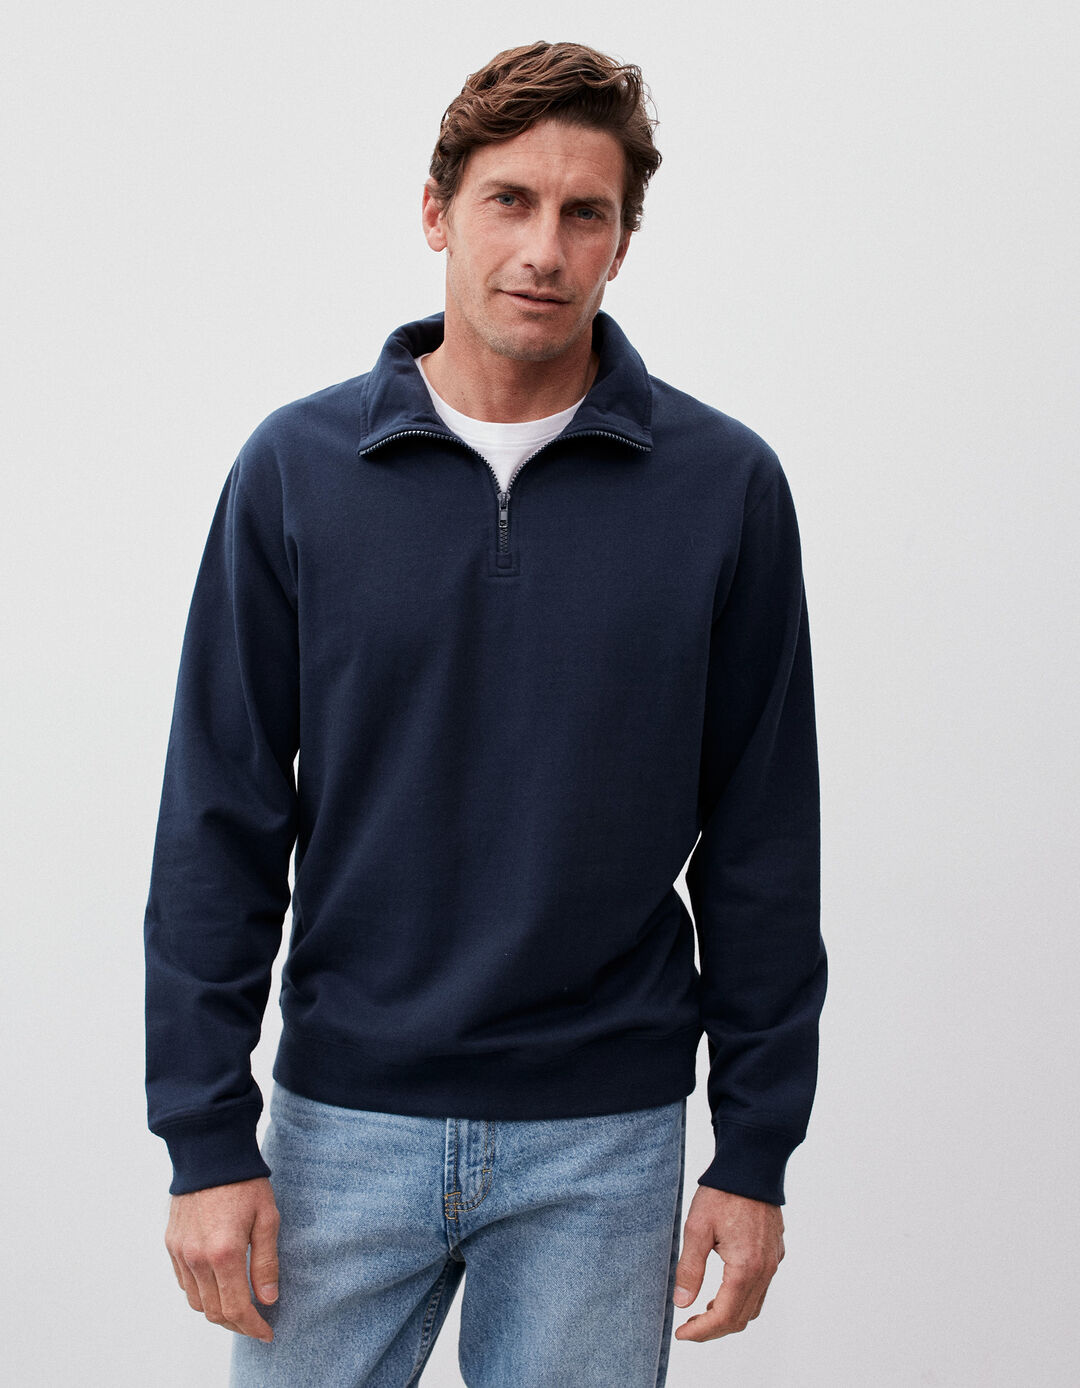 Zip Sweatshirt, Men, Dark Blue